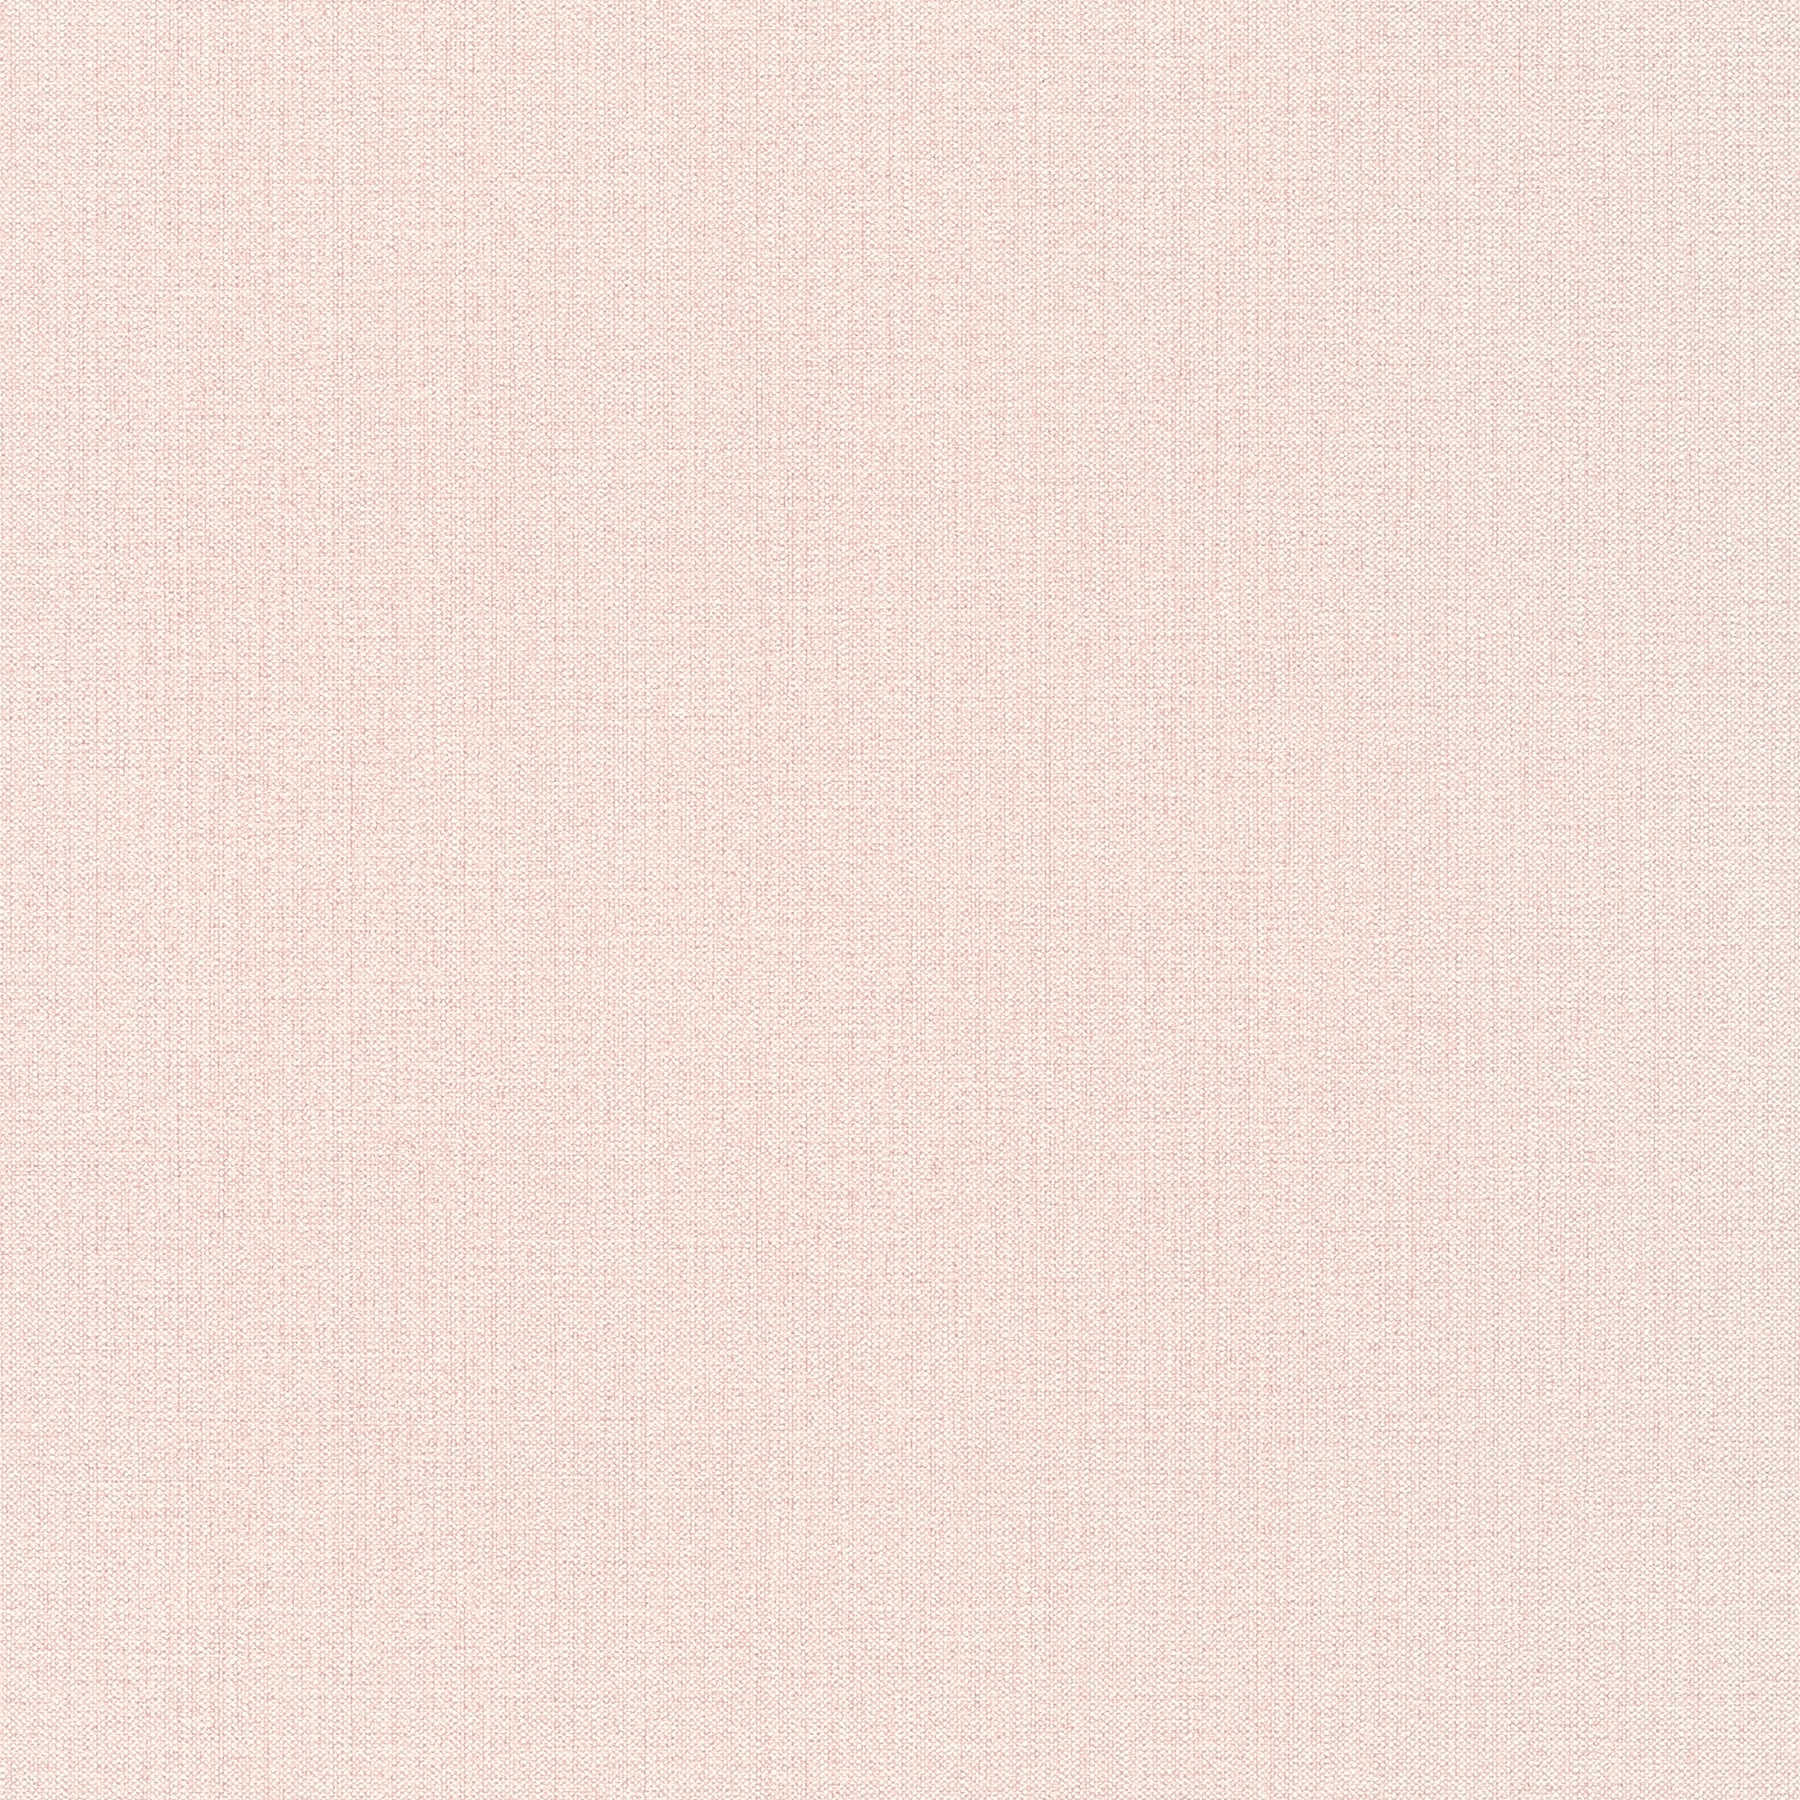 Scandinavian design wallpaper with texture pattern - pink
